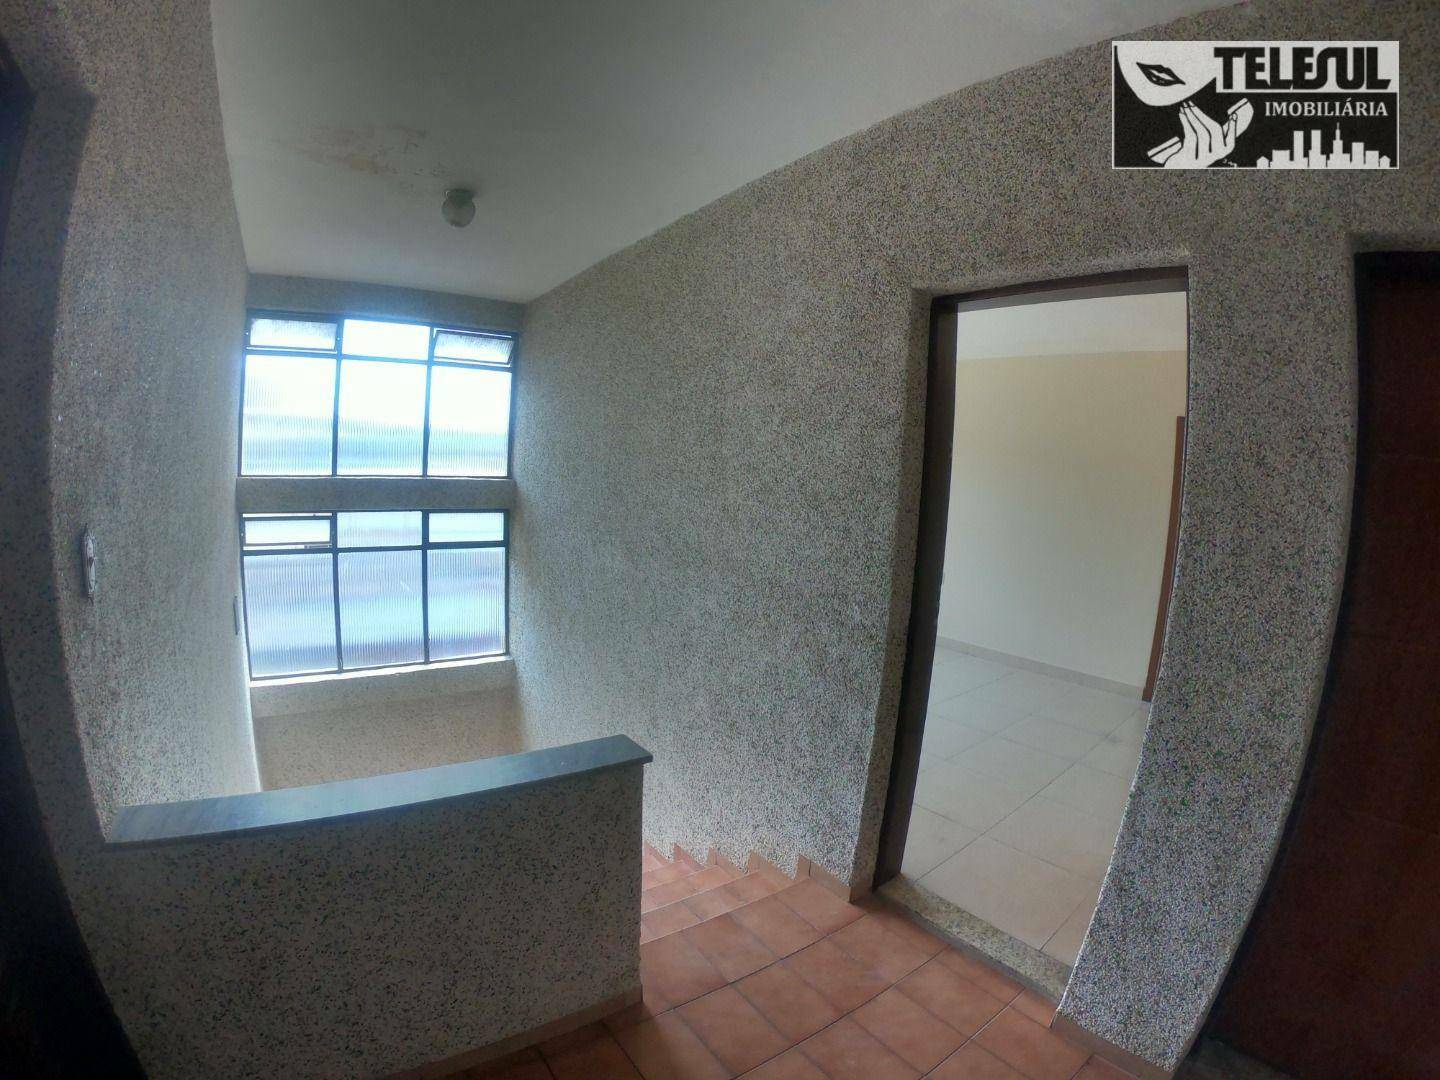 Apartamento, 3 quartos, 130 m² - Foto 2